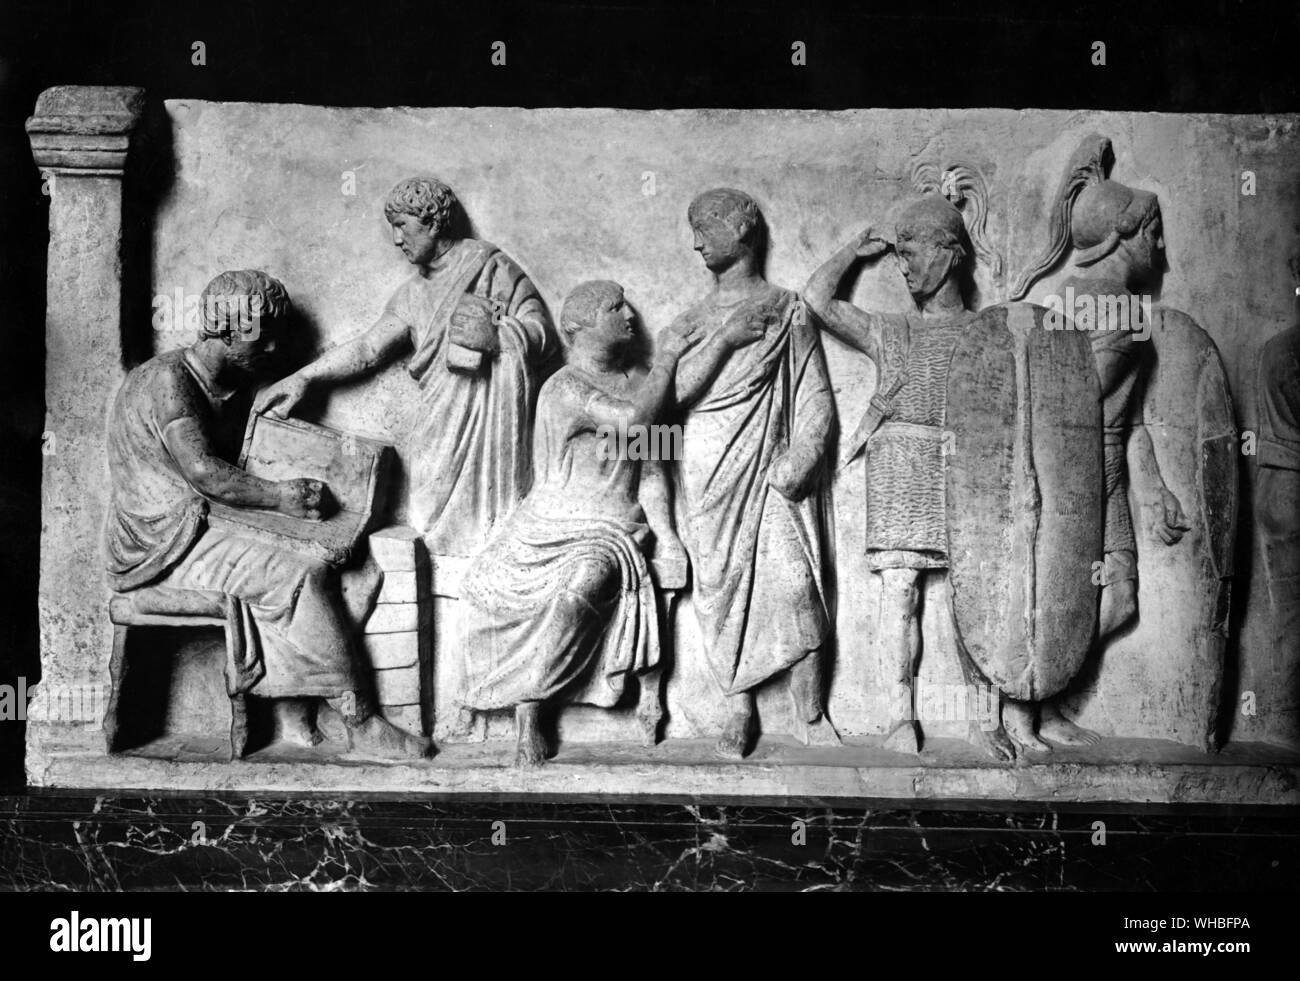 Cérémonie du recensement à partir de l'autel de Dometius Ahenobarbus - fin du 1er siècle avant J.-C. - Paris Louvre. Banque D'Images